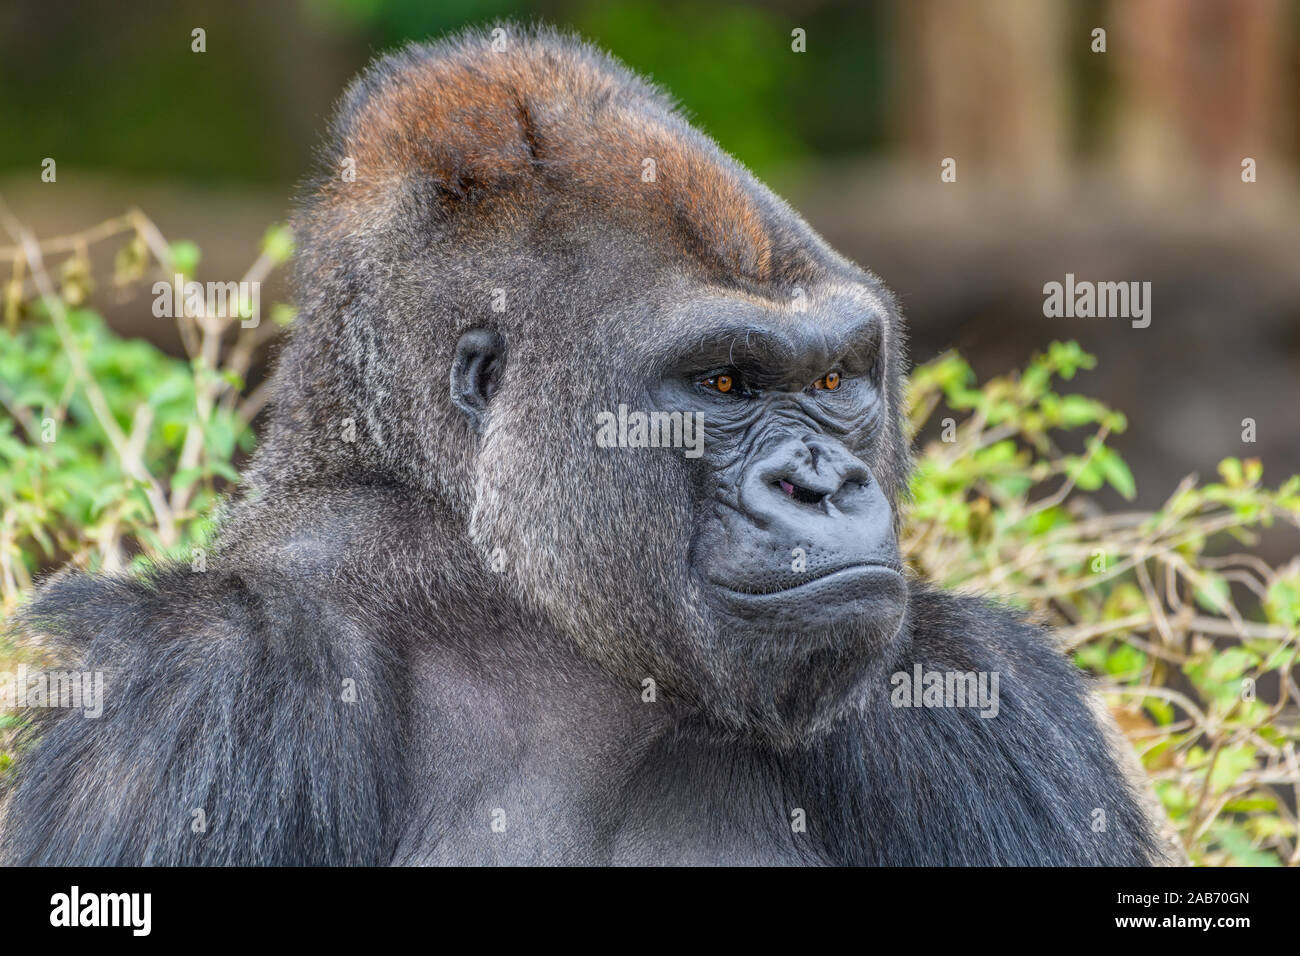 Male Silverback Western Lowland gorilla (Gorilla gorilla gorilla) staring at the camera Stock Photo